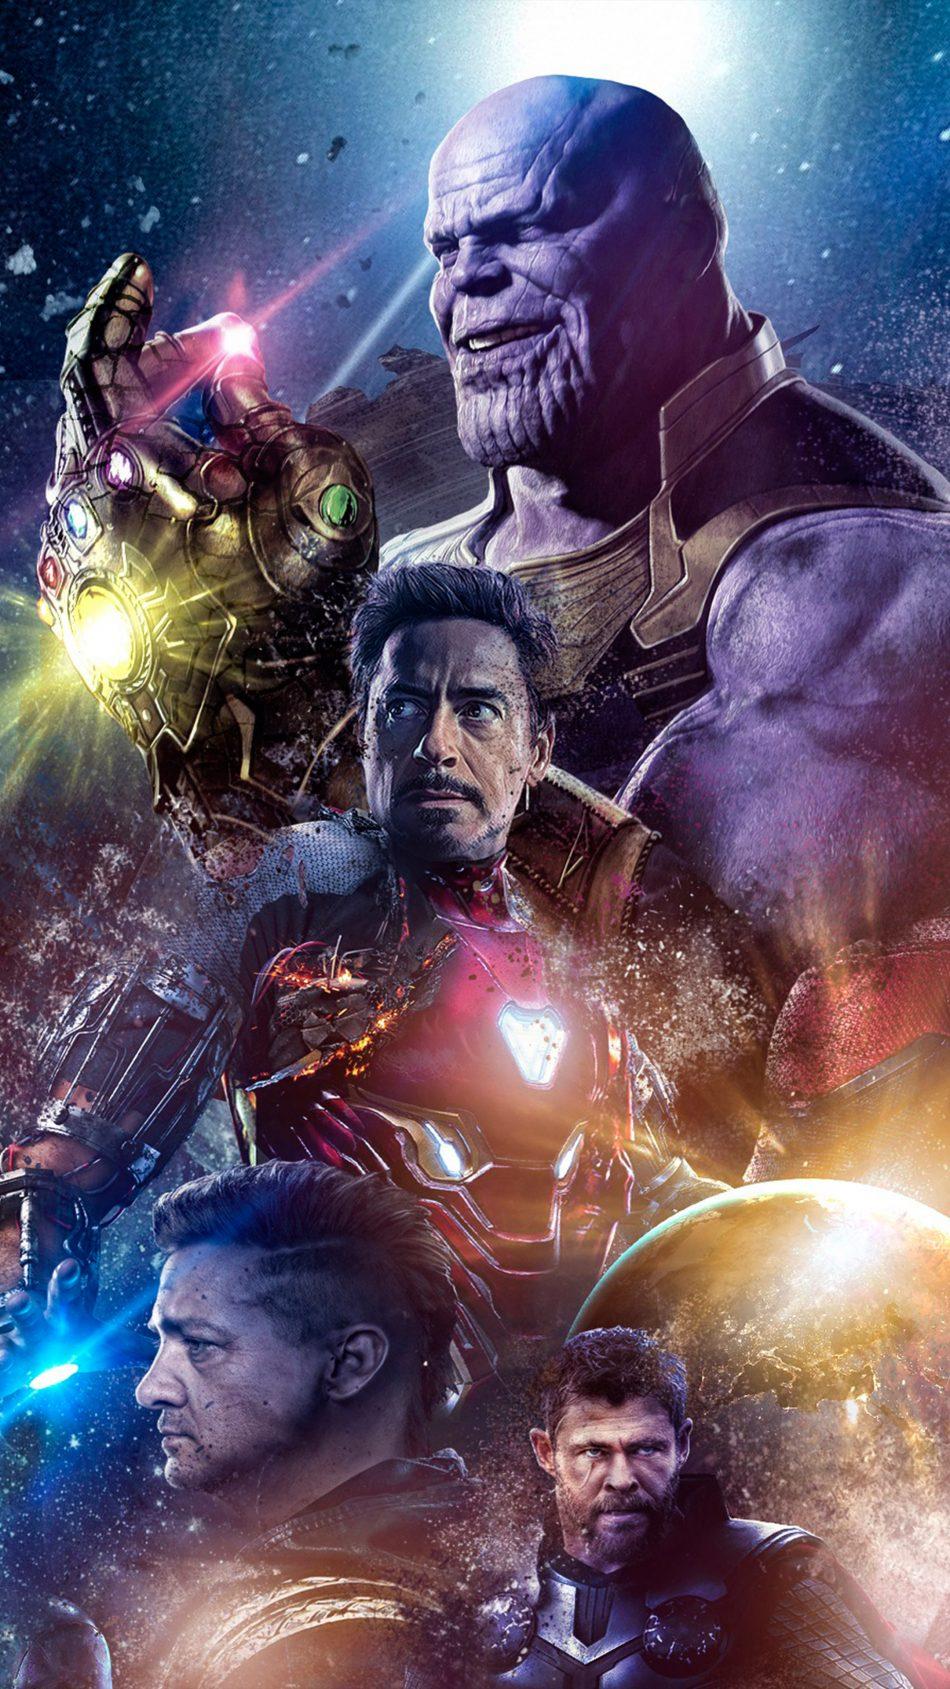 Avengers Endgame 2019 Free 4K Ultra HD Mobile Wallpaper